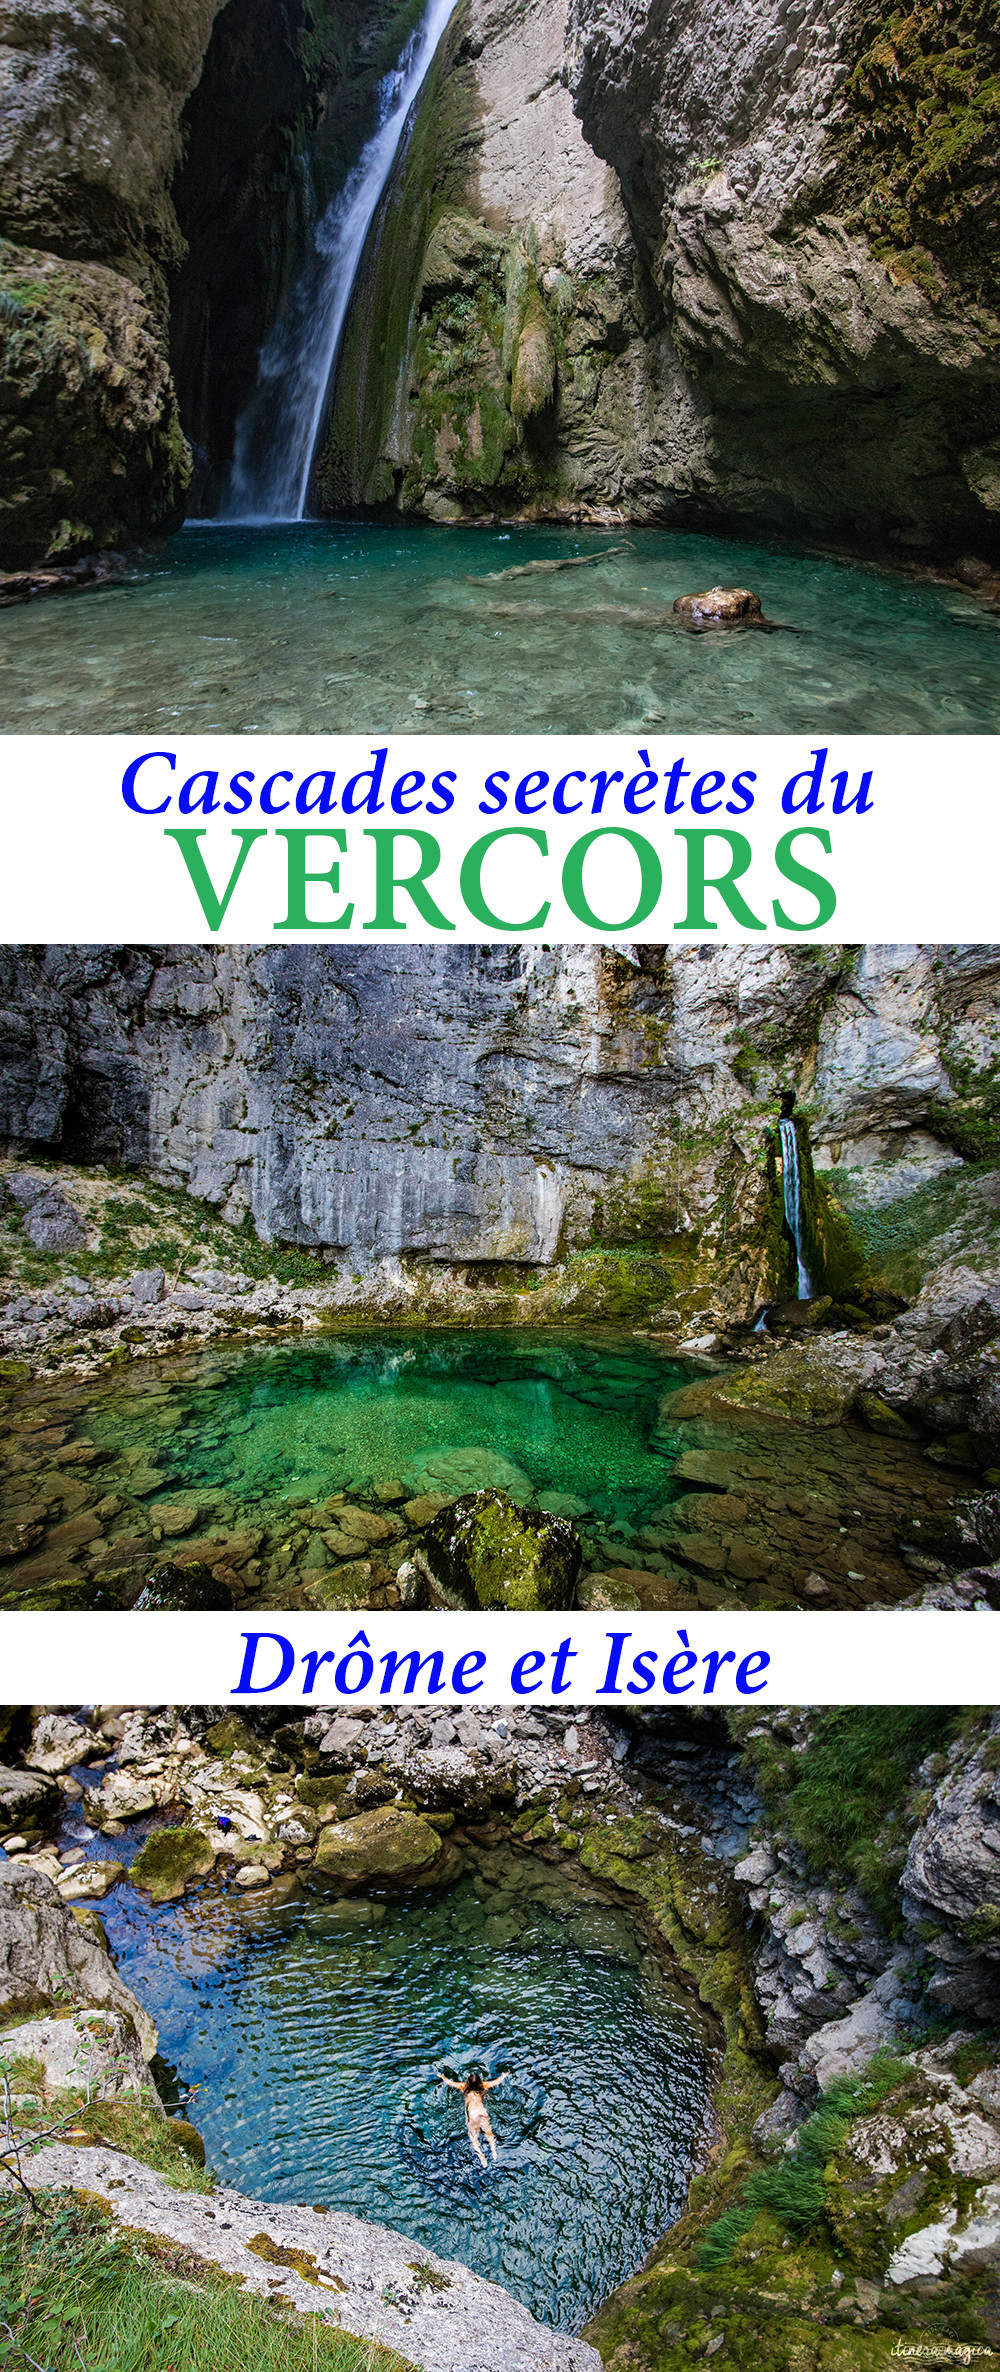 Le Vercors et le pays de Royans au fil de l'eau : les plus belles cascades du Vercos, les rivières souterraines, randonnées secrètes et autres choses à voir en #Drôme et #Isère. #Vercors #cascade